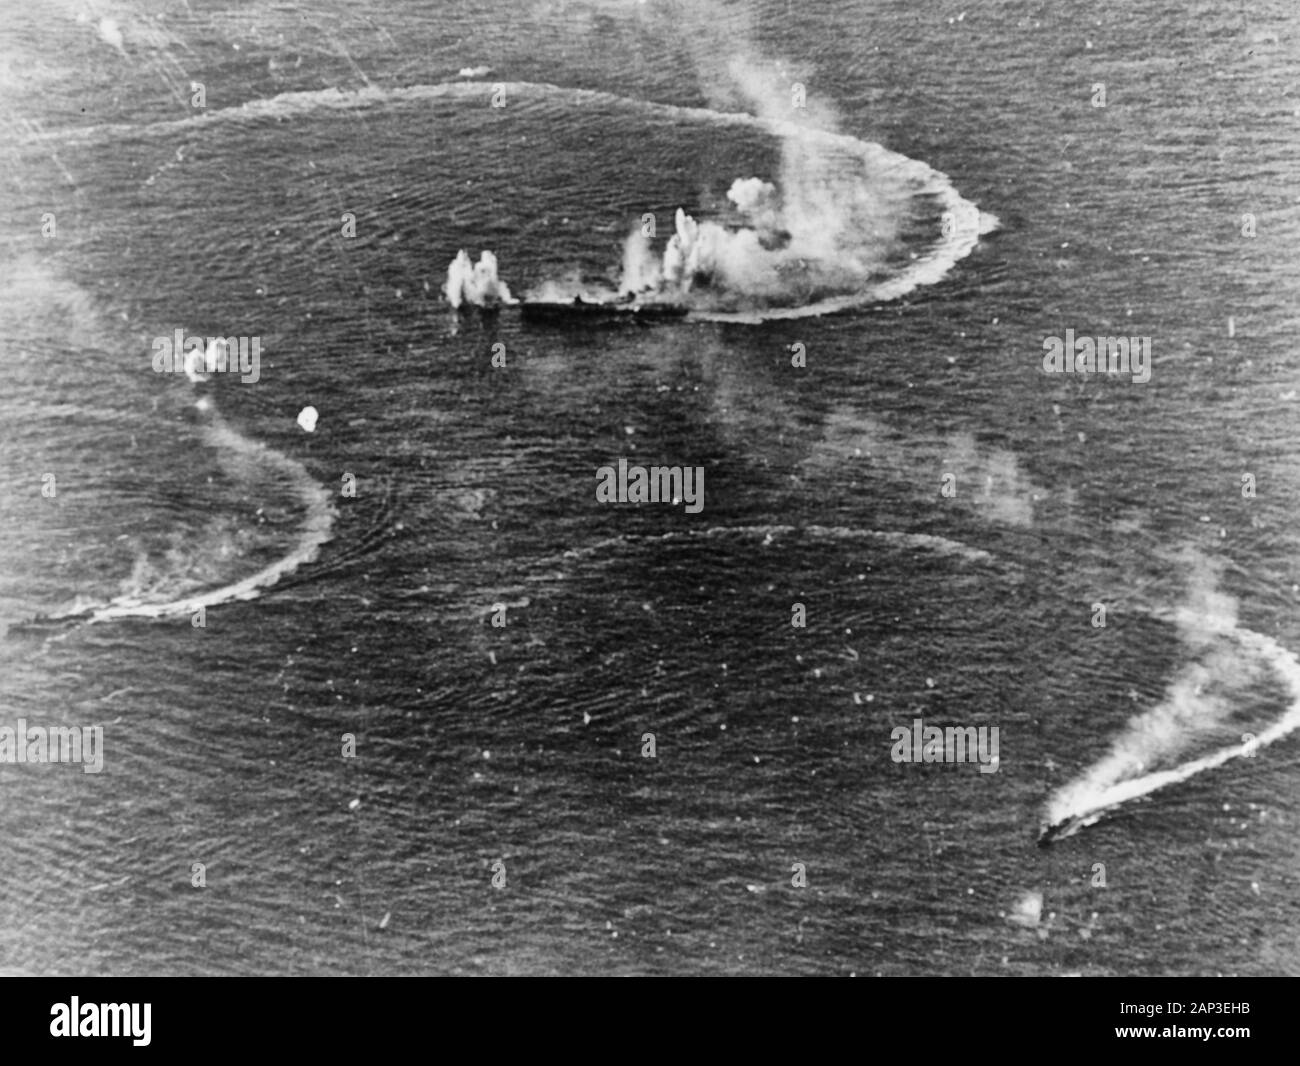 Batalla del Mar de Filipinas: el portaaviones japonés Zuikaku (centro) y los destructores Wakatsuki Akizuki y maniobras, mientras son atacados por aviones de la Marina de EE.UU., durante la tarde del 20 de junio de 1944. Zuikaku fue alcanzado por varias bombas durante estos ataques, pero sobrevivió. Foto de stock